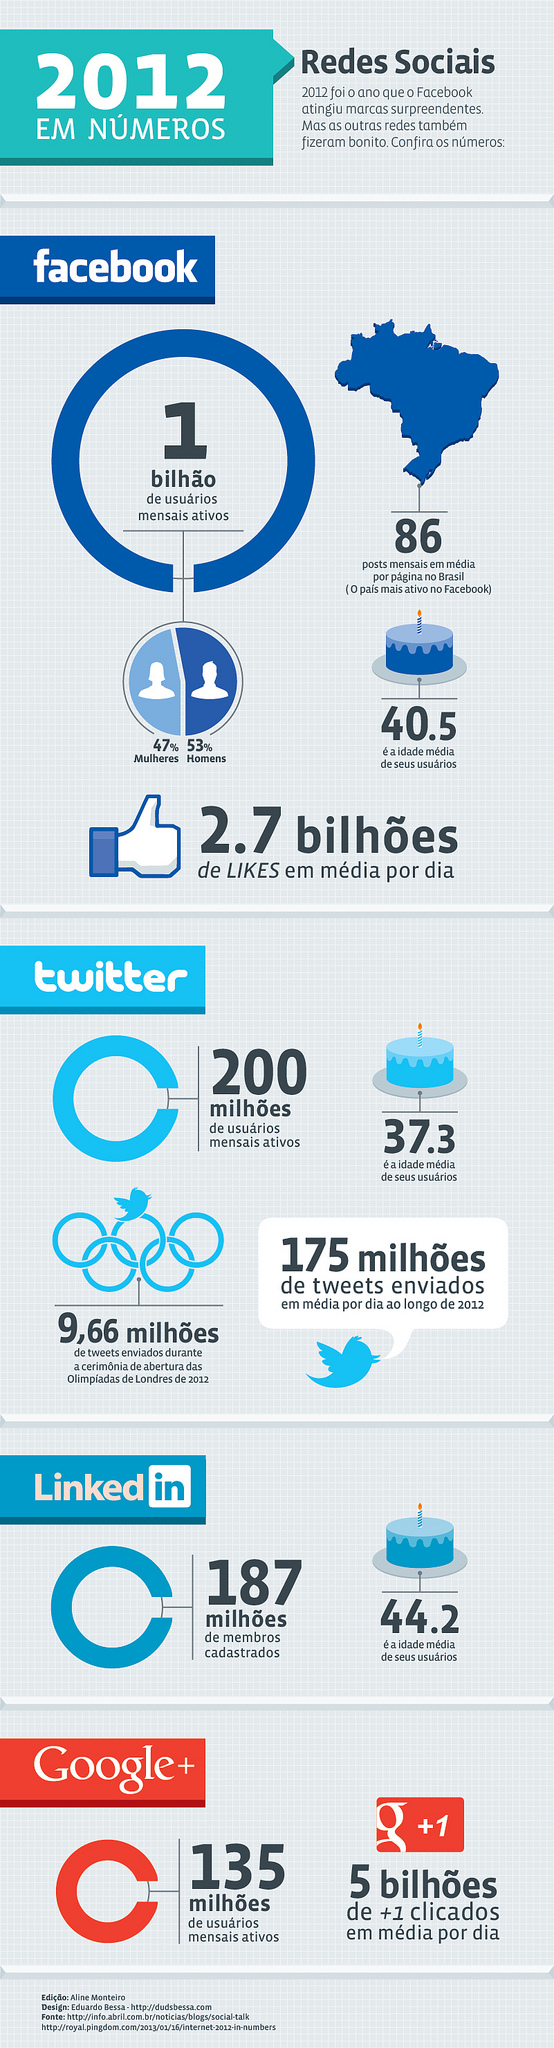 infografico-redessociais-2012